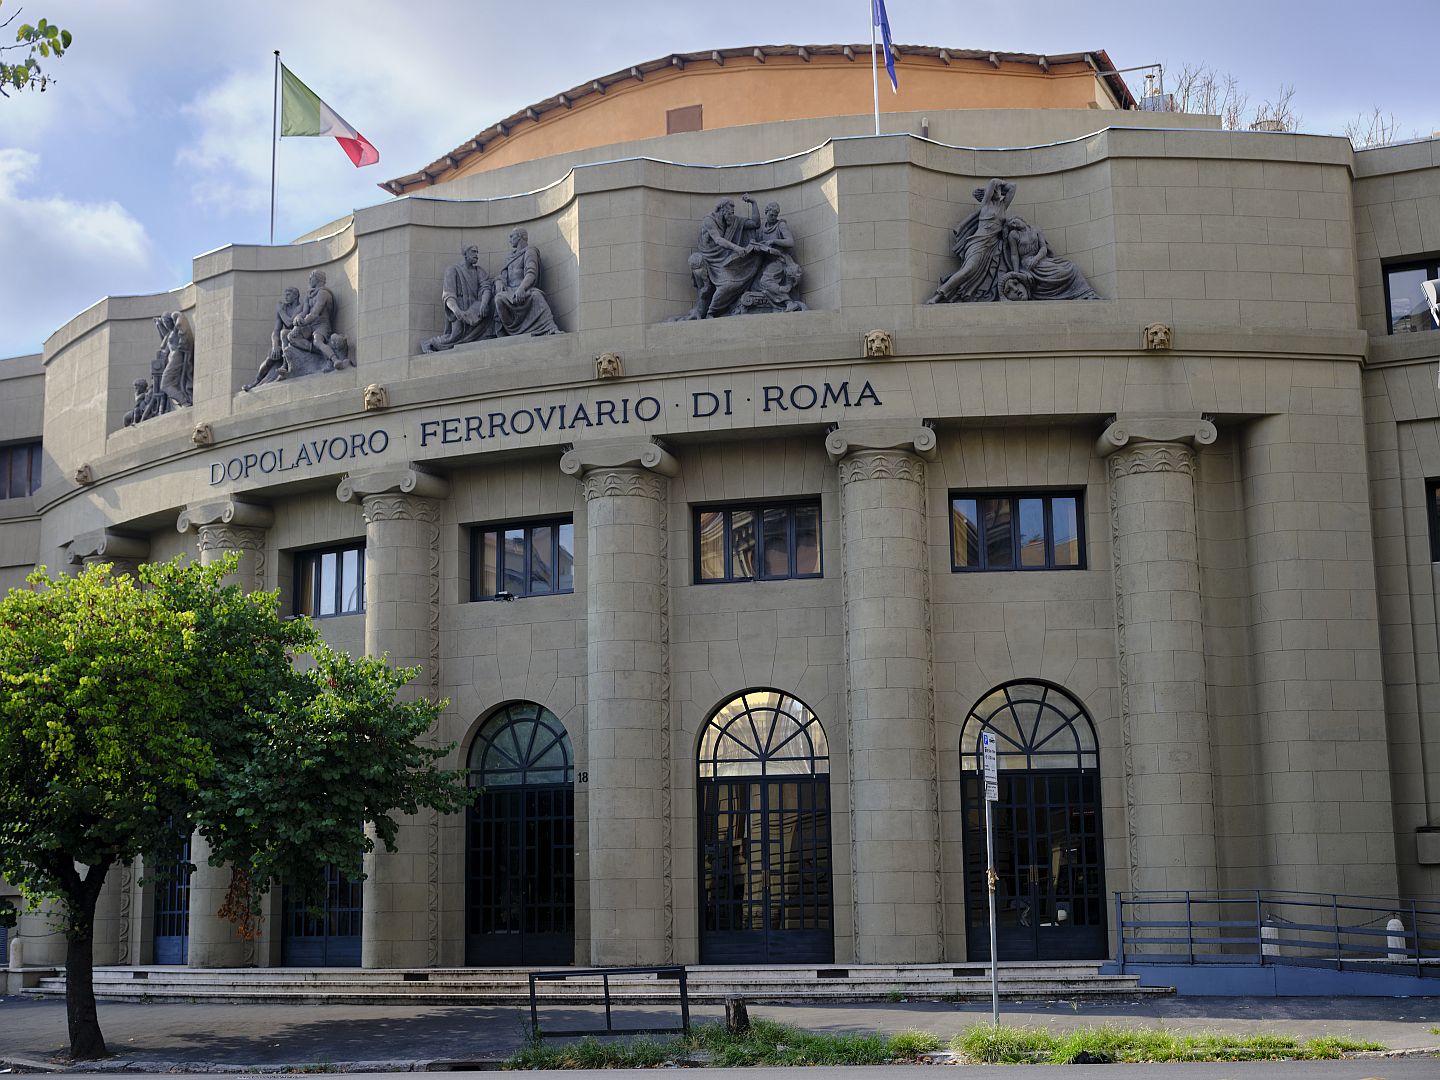 Vandalism Defaces Milan's Historic Galleria Vittorio Emanuele II